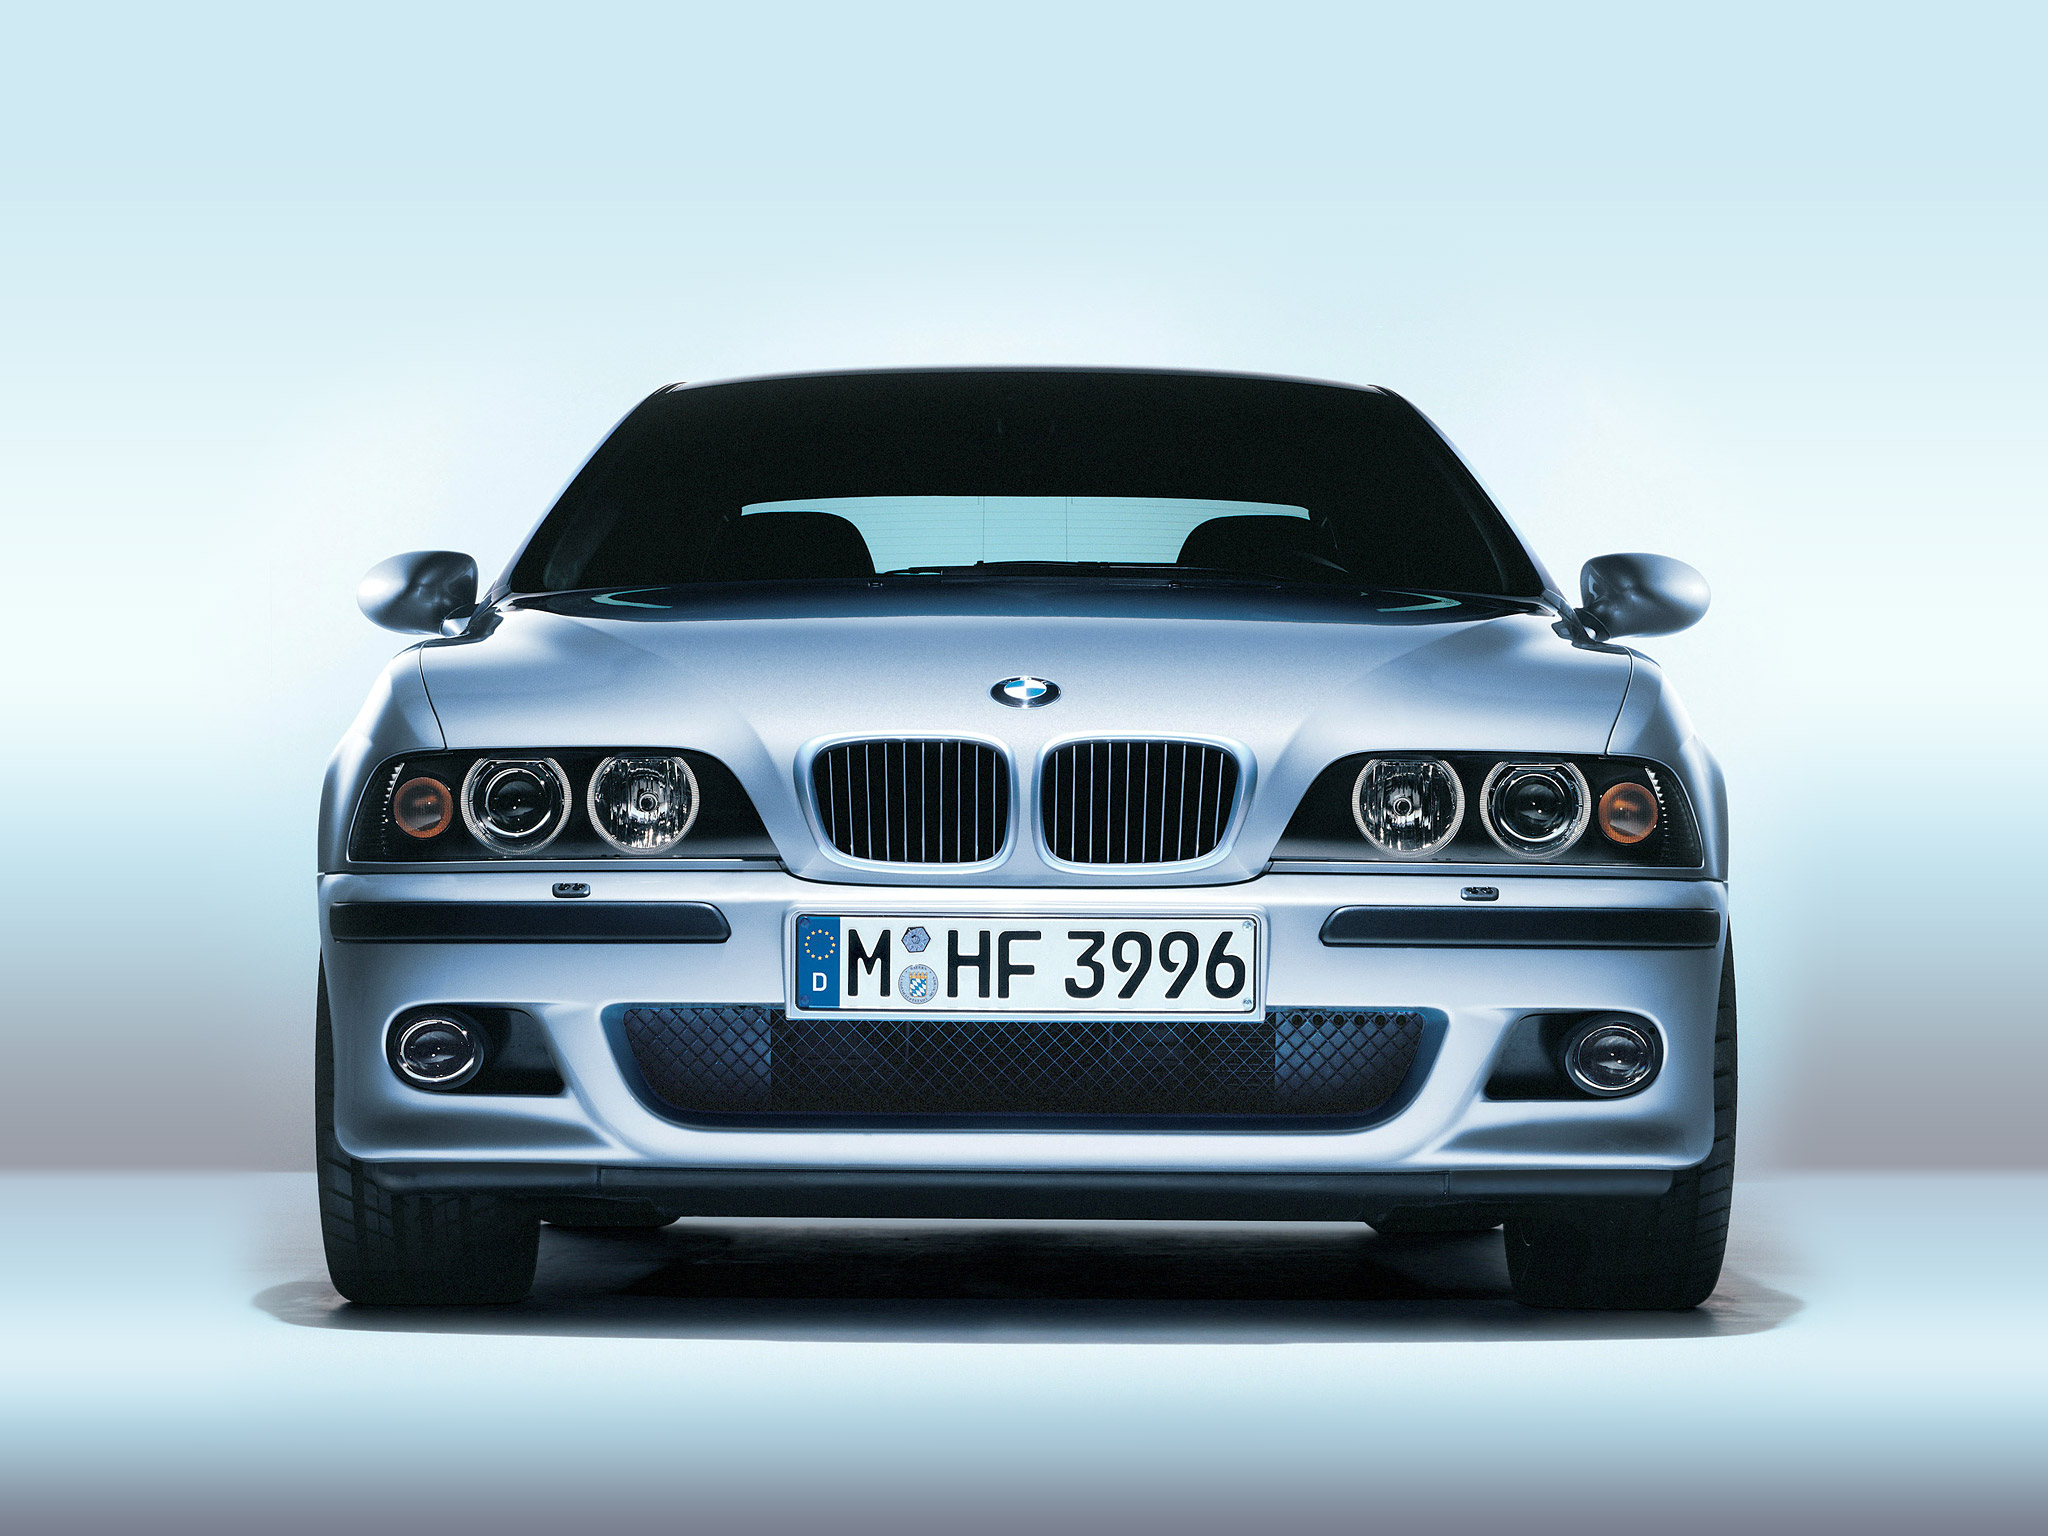  1998 BMW M5 Wallpaper.